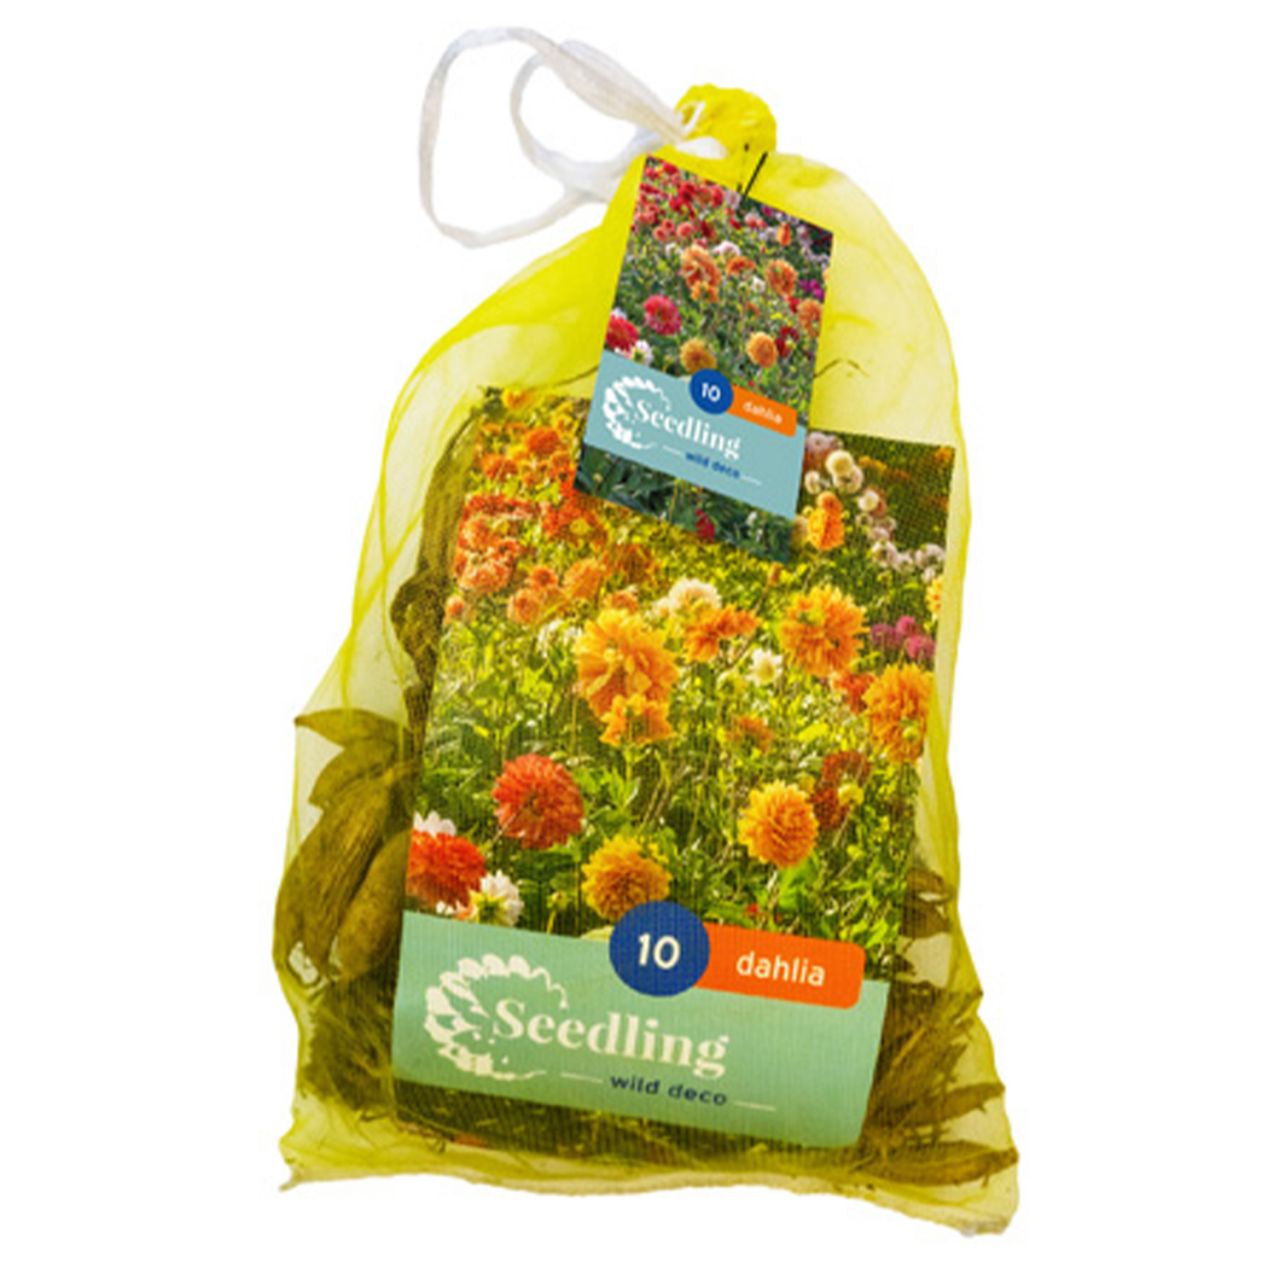 Kategorie <b>Frühlings-Blumenzwiebeln </b> - Wilde Schmuckdahlien-Mischung - 10 Stück - Dahlie Seedling Decorative